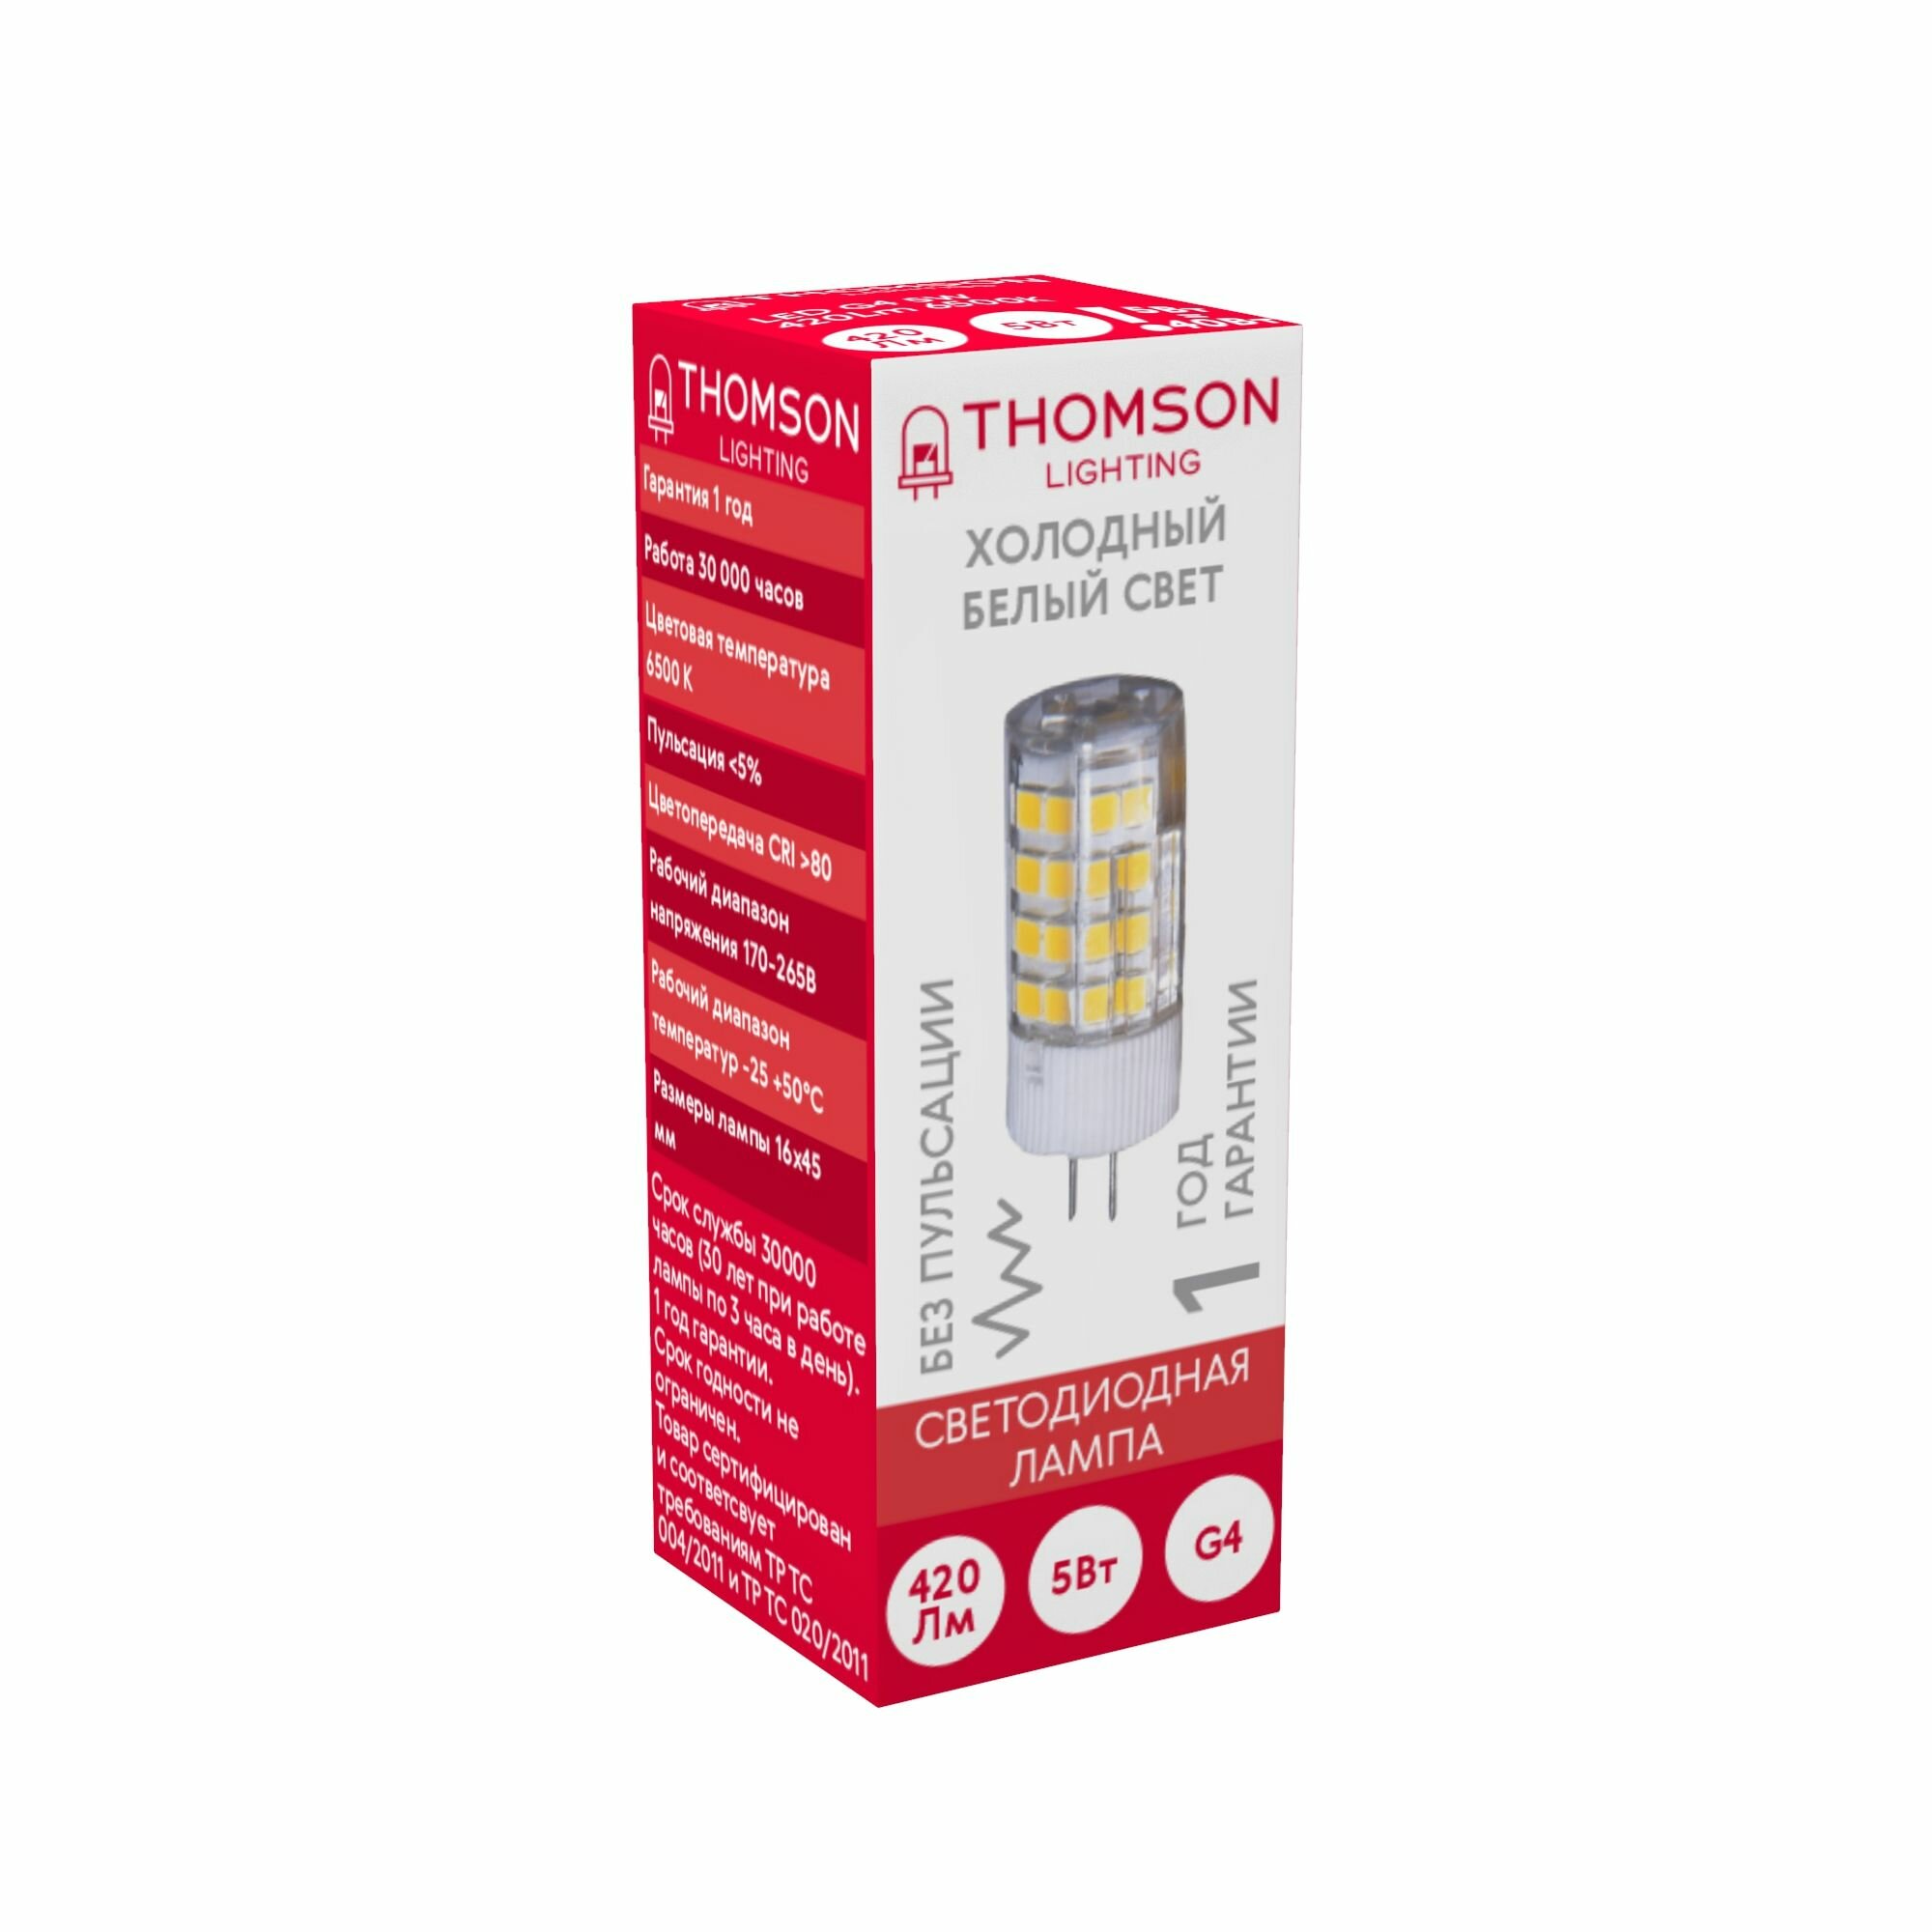 Лампочка Thomson TH-B4229 5 Вт, G4, 6500К, капсула, холодный белый свет